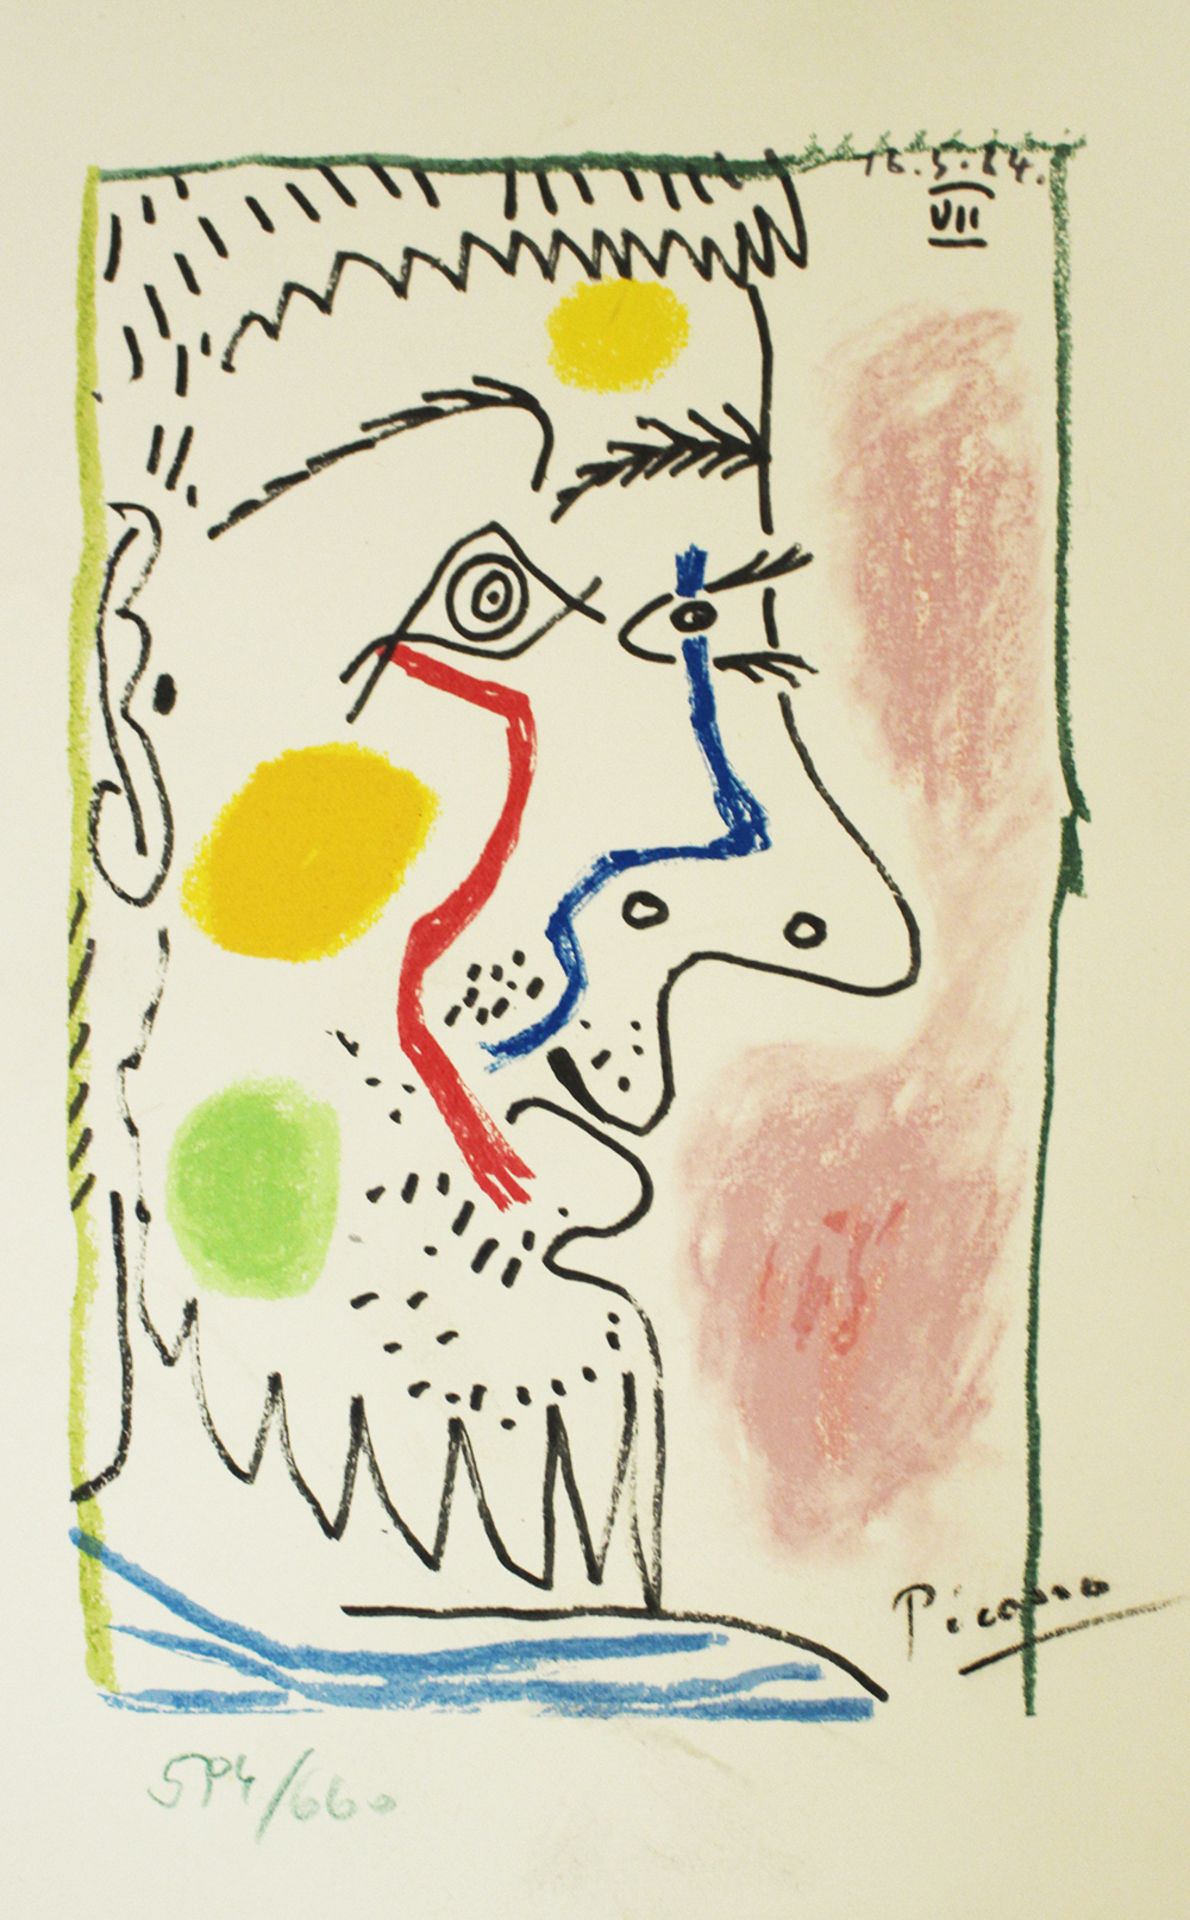 Pablo Ruiz Picasso (1881-1973)-graphic - Image 2 of 3